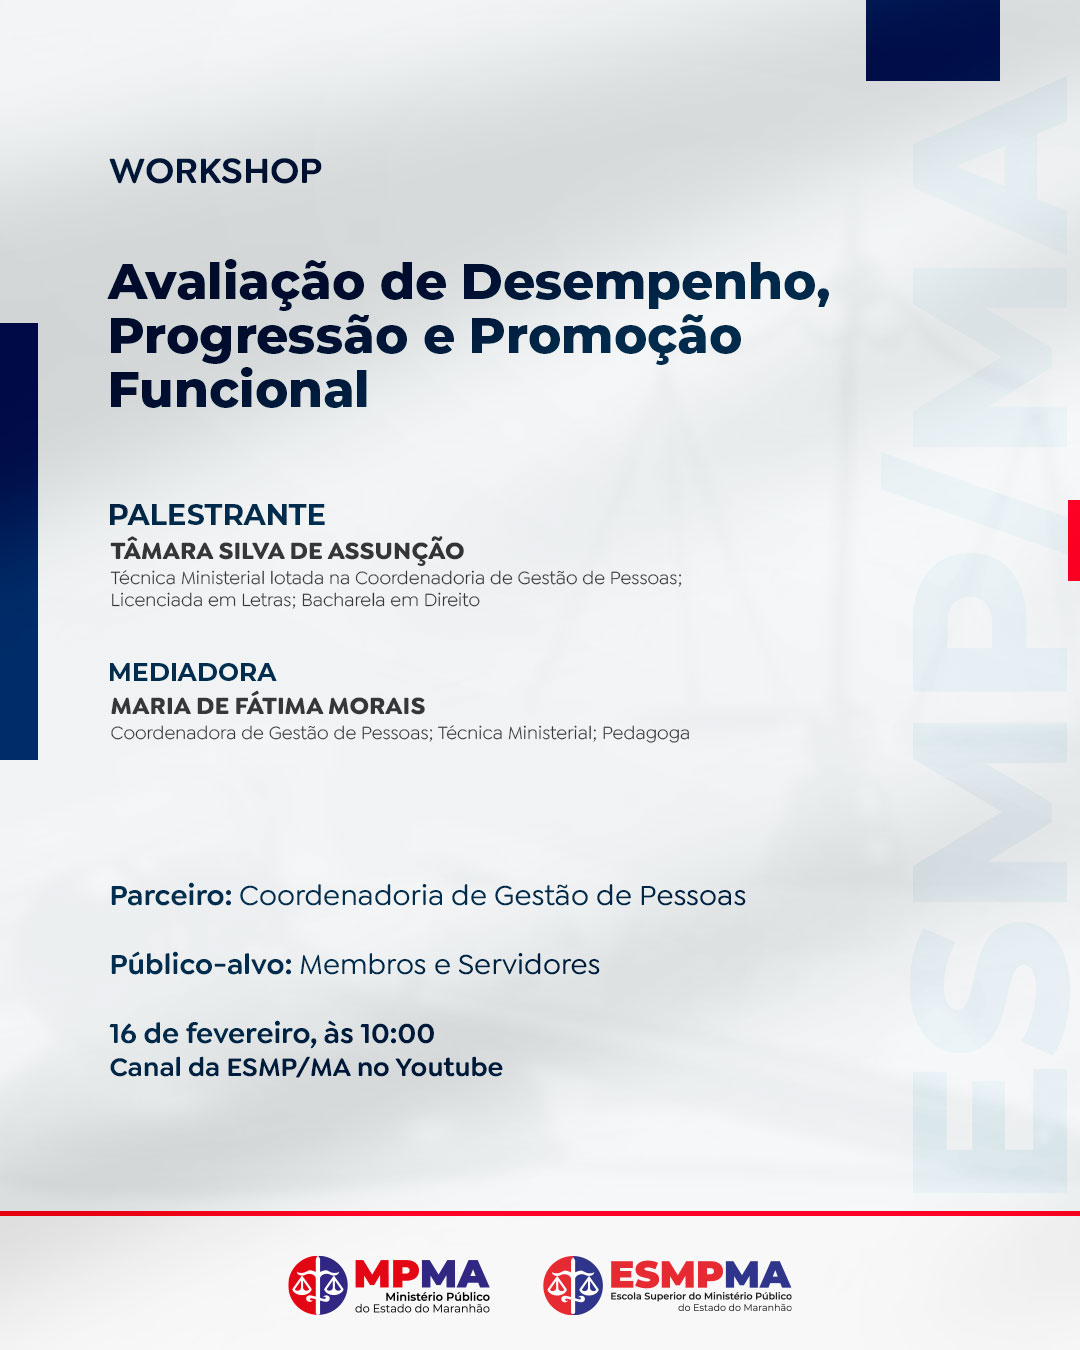 Workshop Avaliação de Desempenho, Progressão e Promoção Funcional